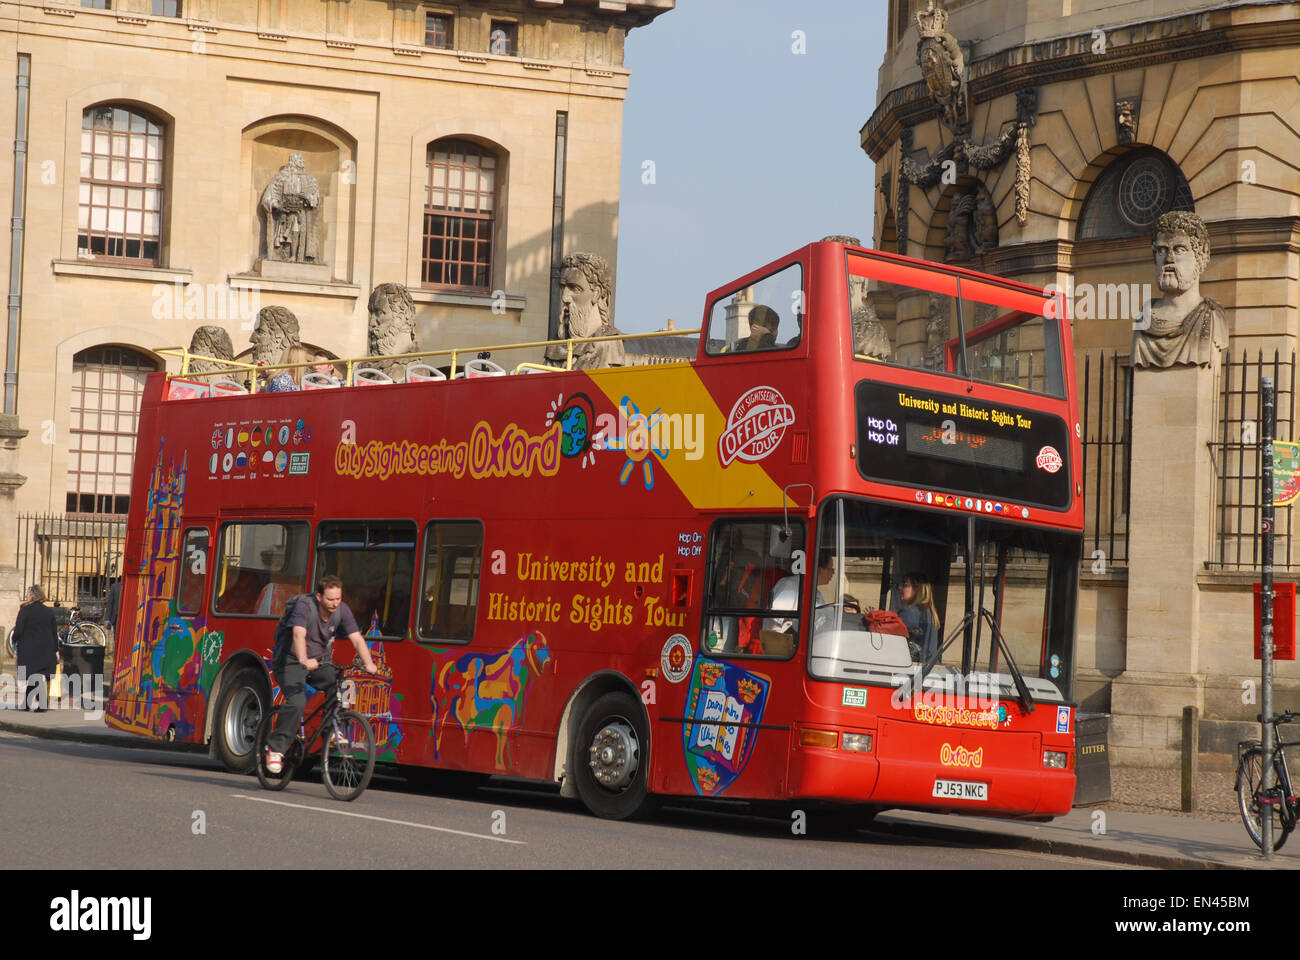 Ouvrir l'université en tête et sites historiques Tour Bus, Oxford, Angleterre Banque D'Images